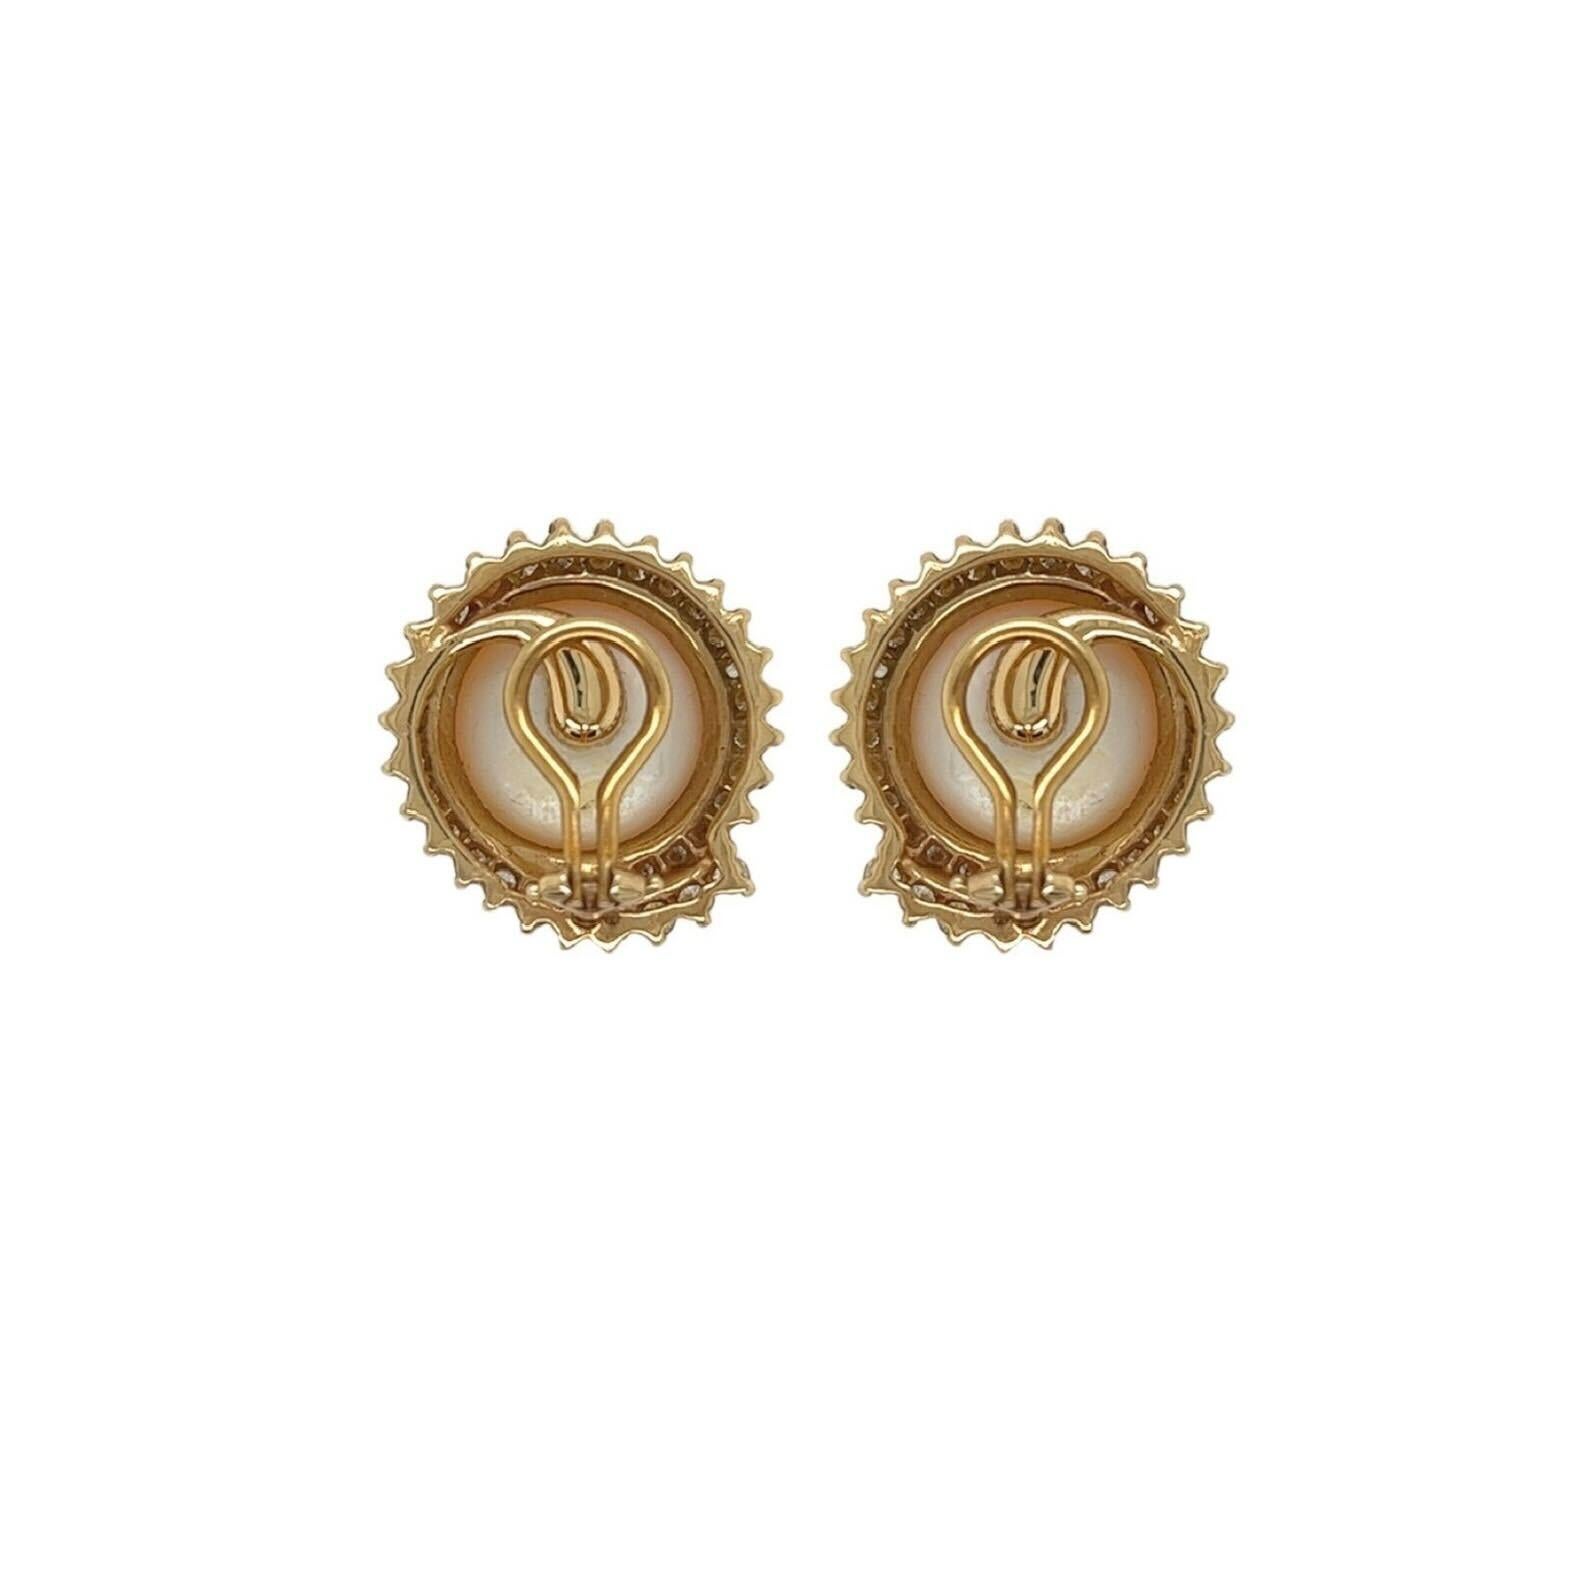 Ein Paar Ohrclips aus 14 Karat Gelbgold, Perlen und Diamanten.  Jeder Ohrclip besteht aus einer zentralen, ca. 13,4 mm großen Mabe-Perle, die von einer Spirale aus ca. zweiunddreißig (32) runden Diamanten im Brillantschliff umgeben ist. 